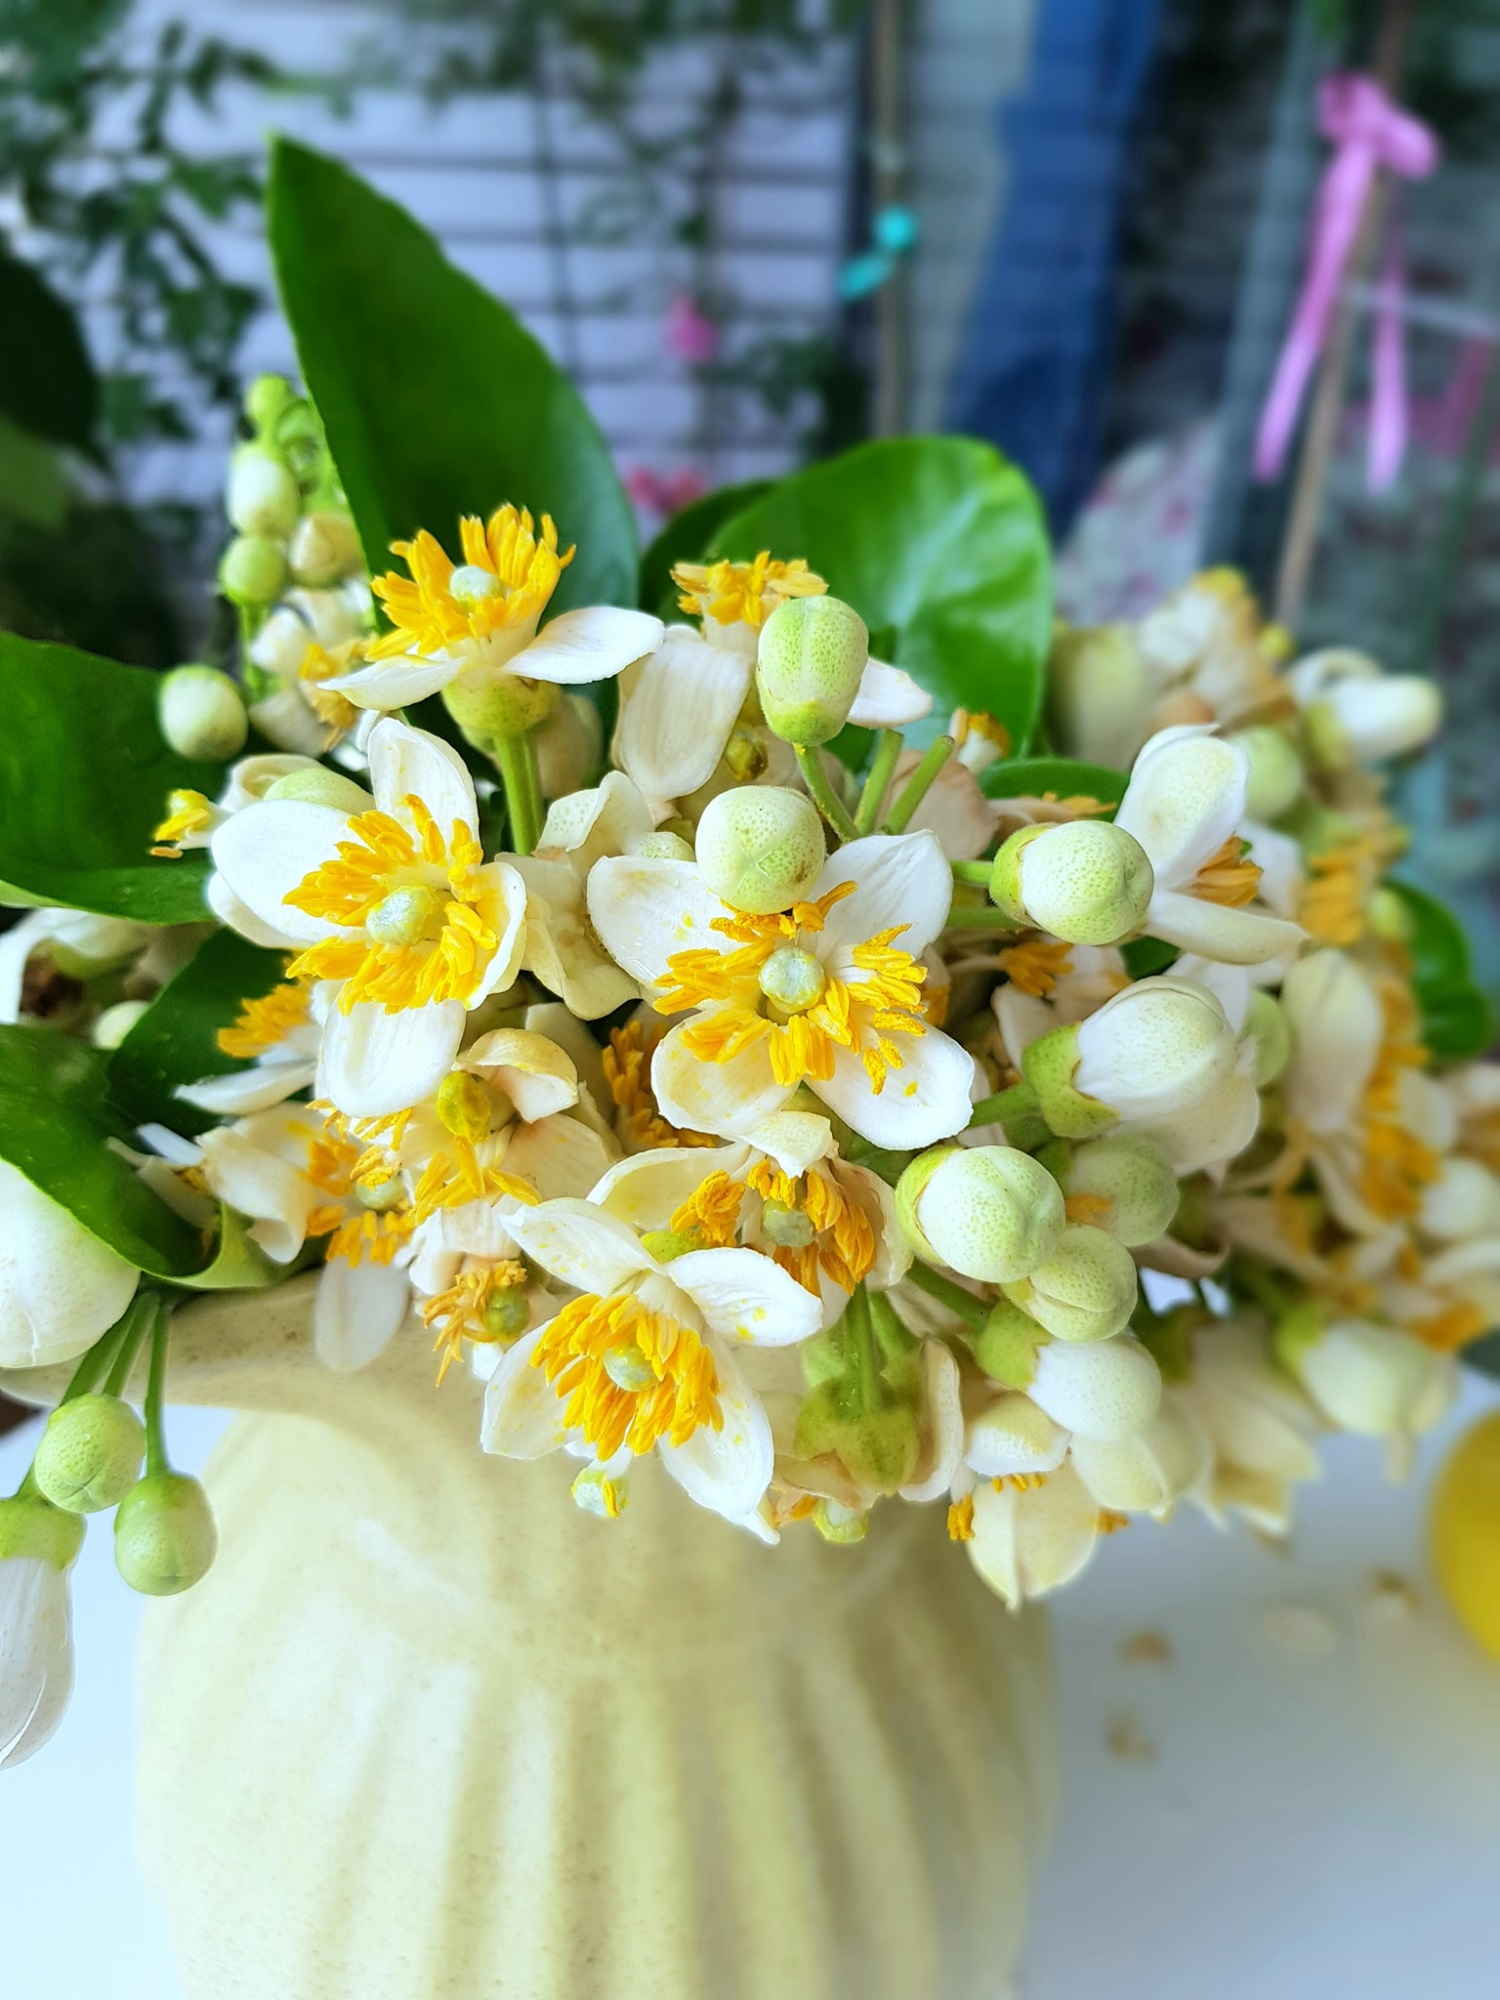 Hoa bưởi vừa mua về đã héo, làm ngay những bước này để hoa tươi lâu cả tuần, hương thơm lâu tàn - 8